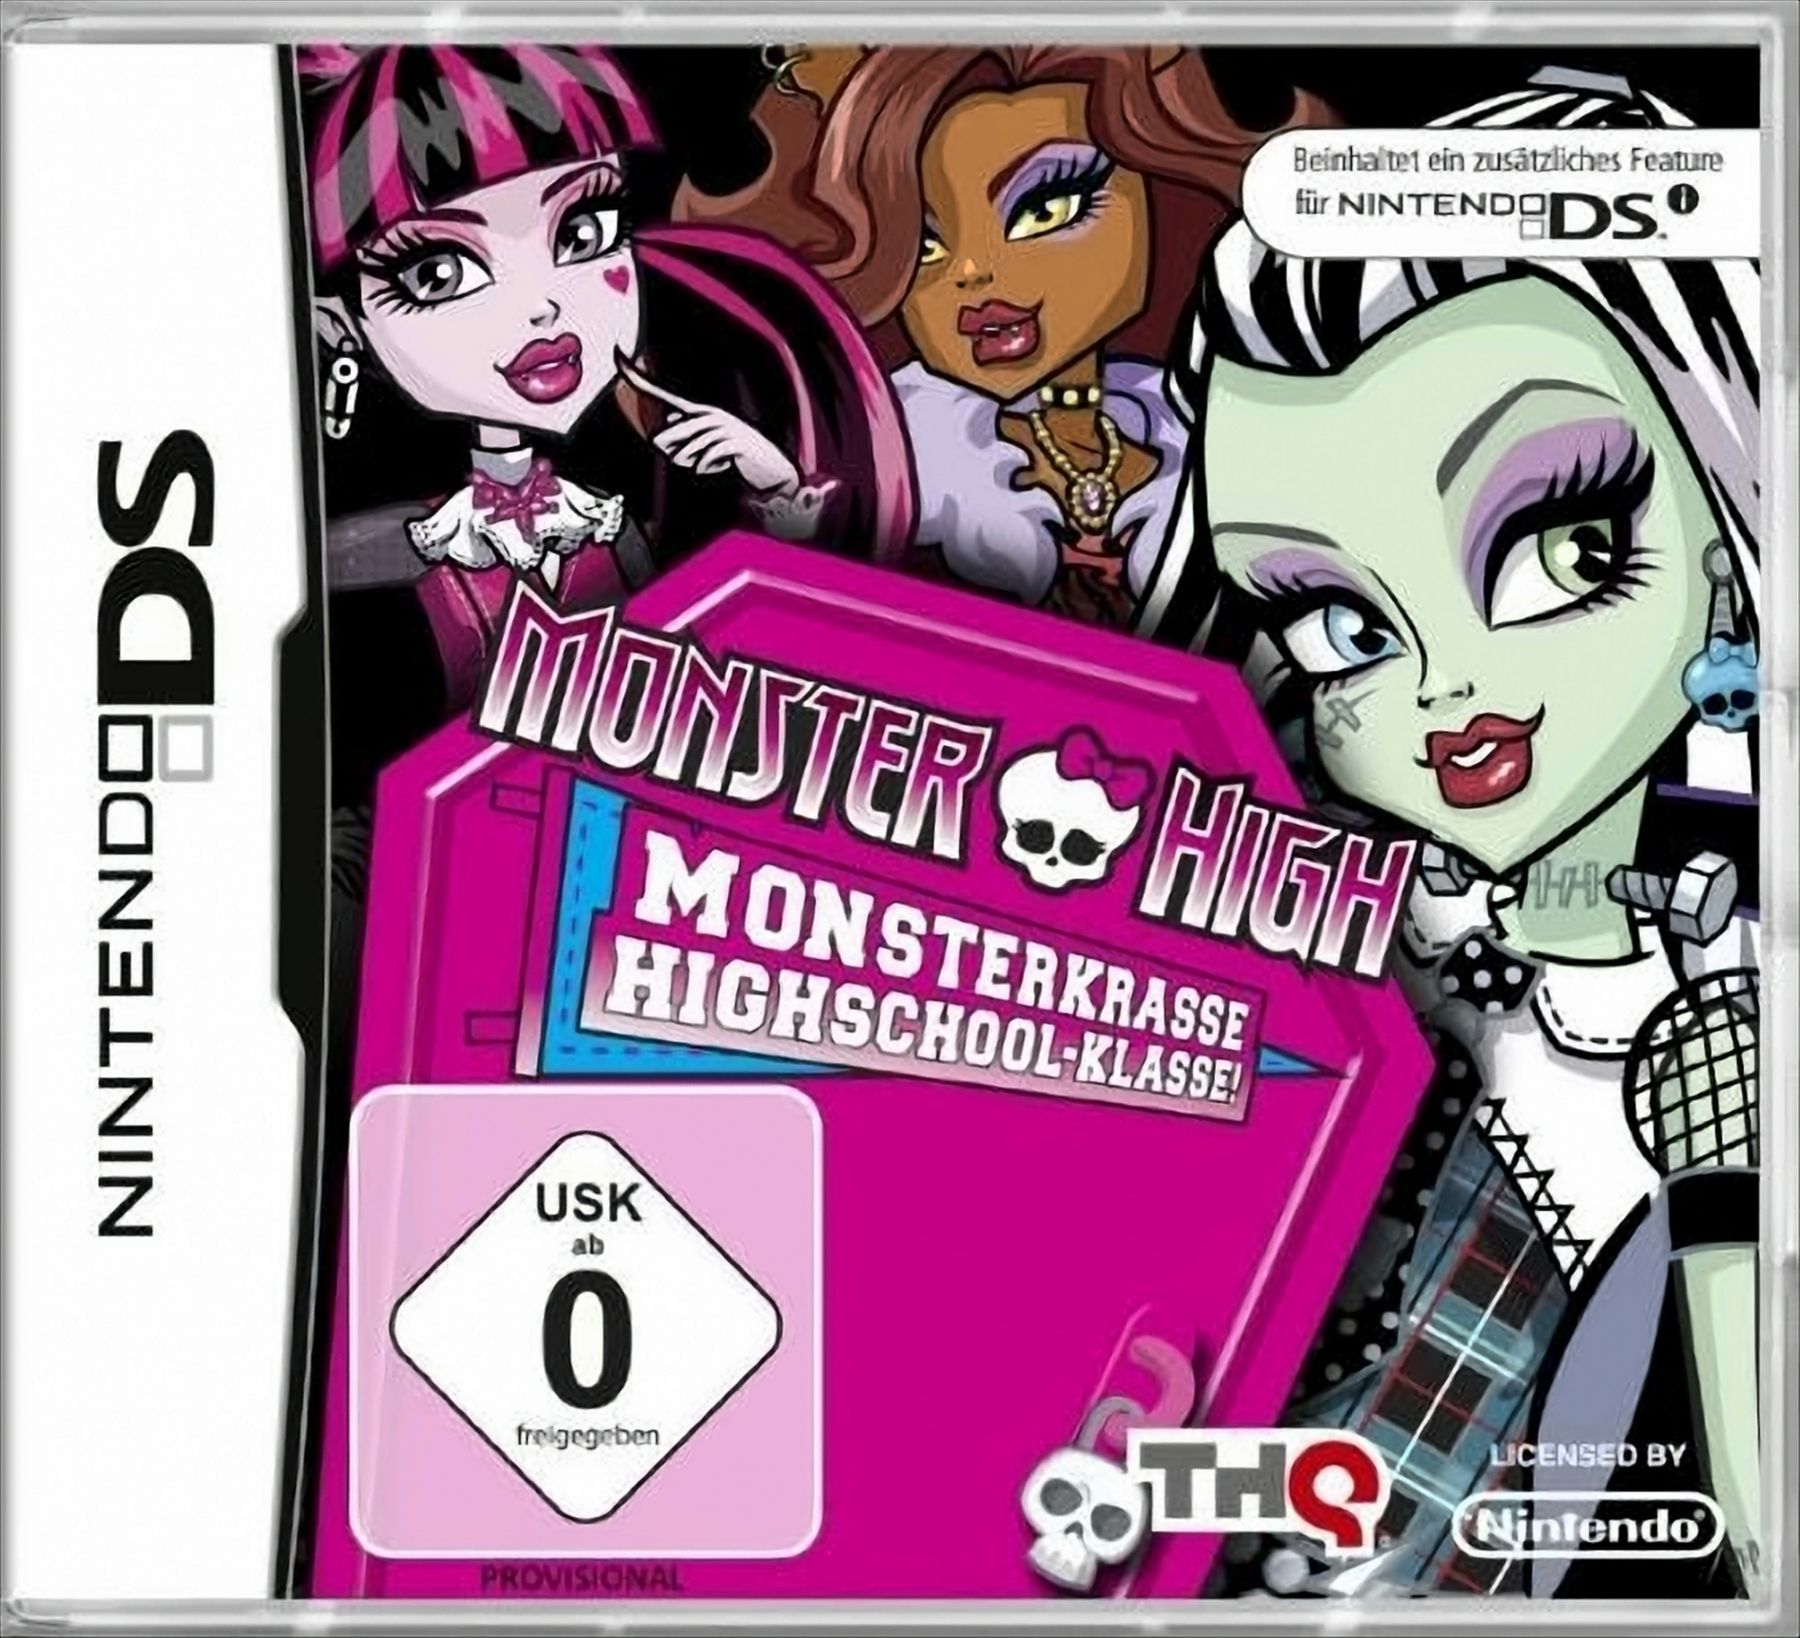 Monster High - Monsterkrasse Highschool-Klasse! DS] - [Nintendo